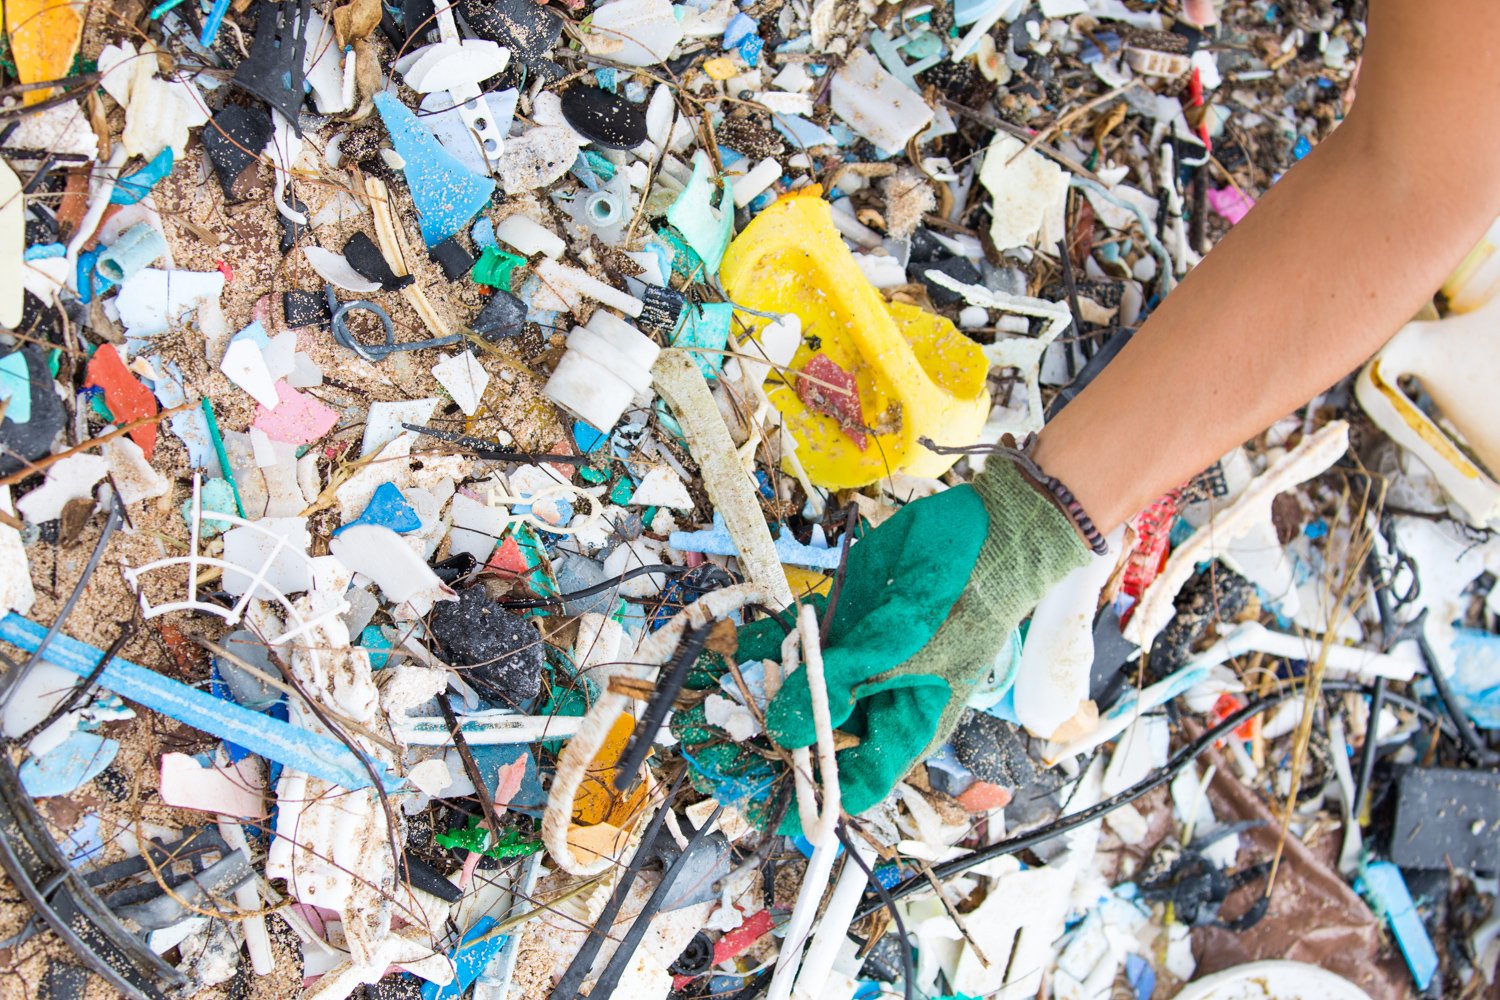 Kahuku Point Plastic pollution